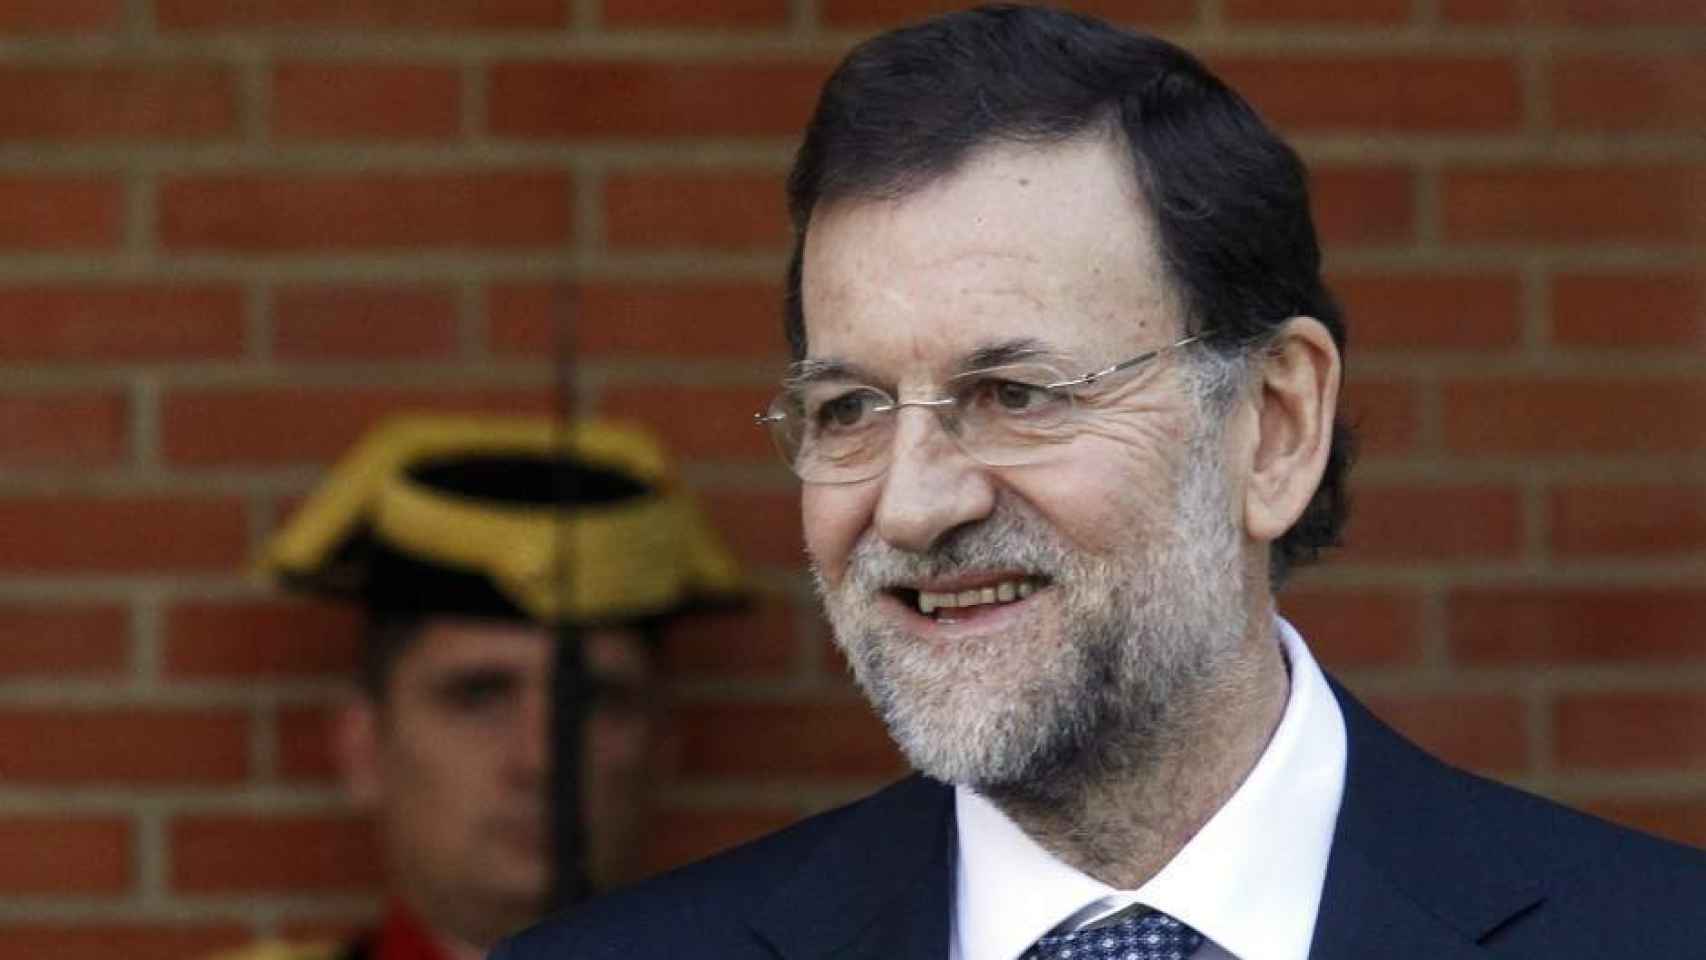 Rajoy es de los pocos líderes que lleva barba